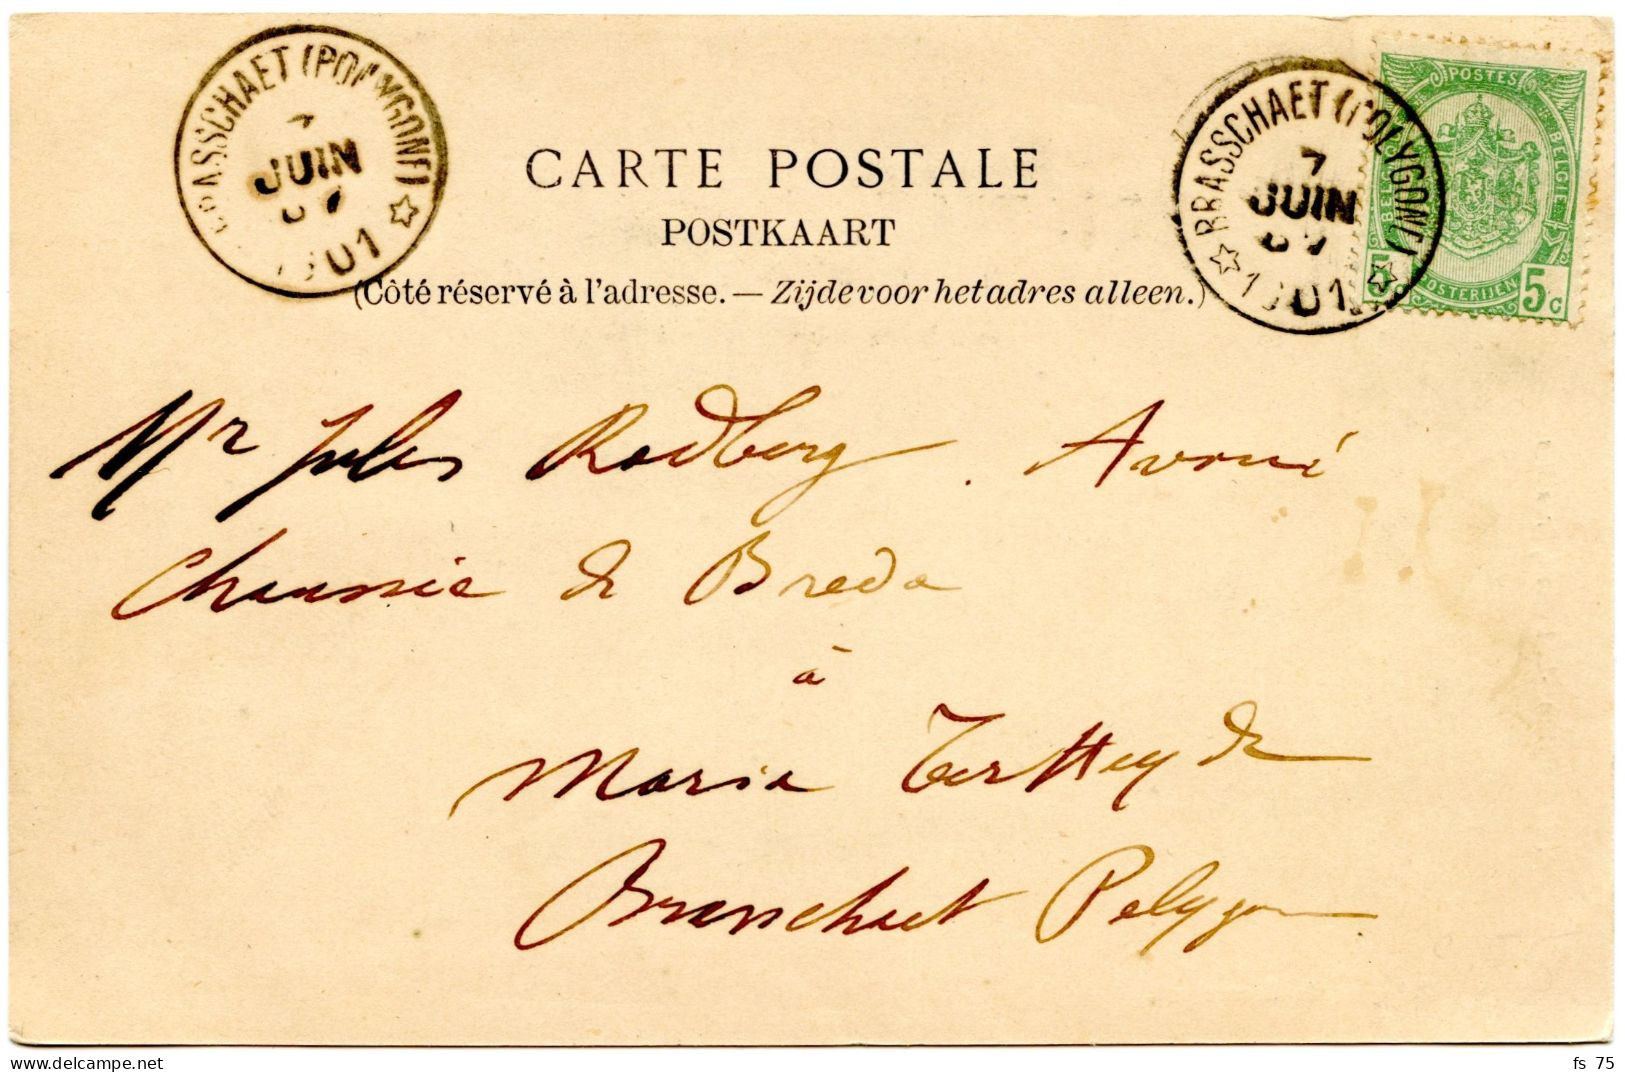 BELGIQUE - COB 56 SIMPLE CERCLE RELAIS A ETOILES BRASSCHAET (POLYGONE) SUR CARTE POSTALE, 1901 - Postmarks With Stars